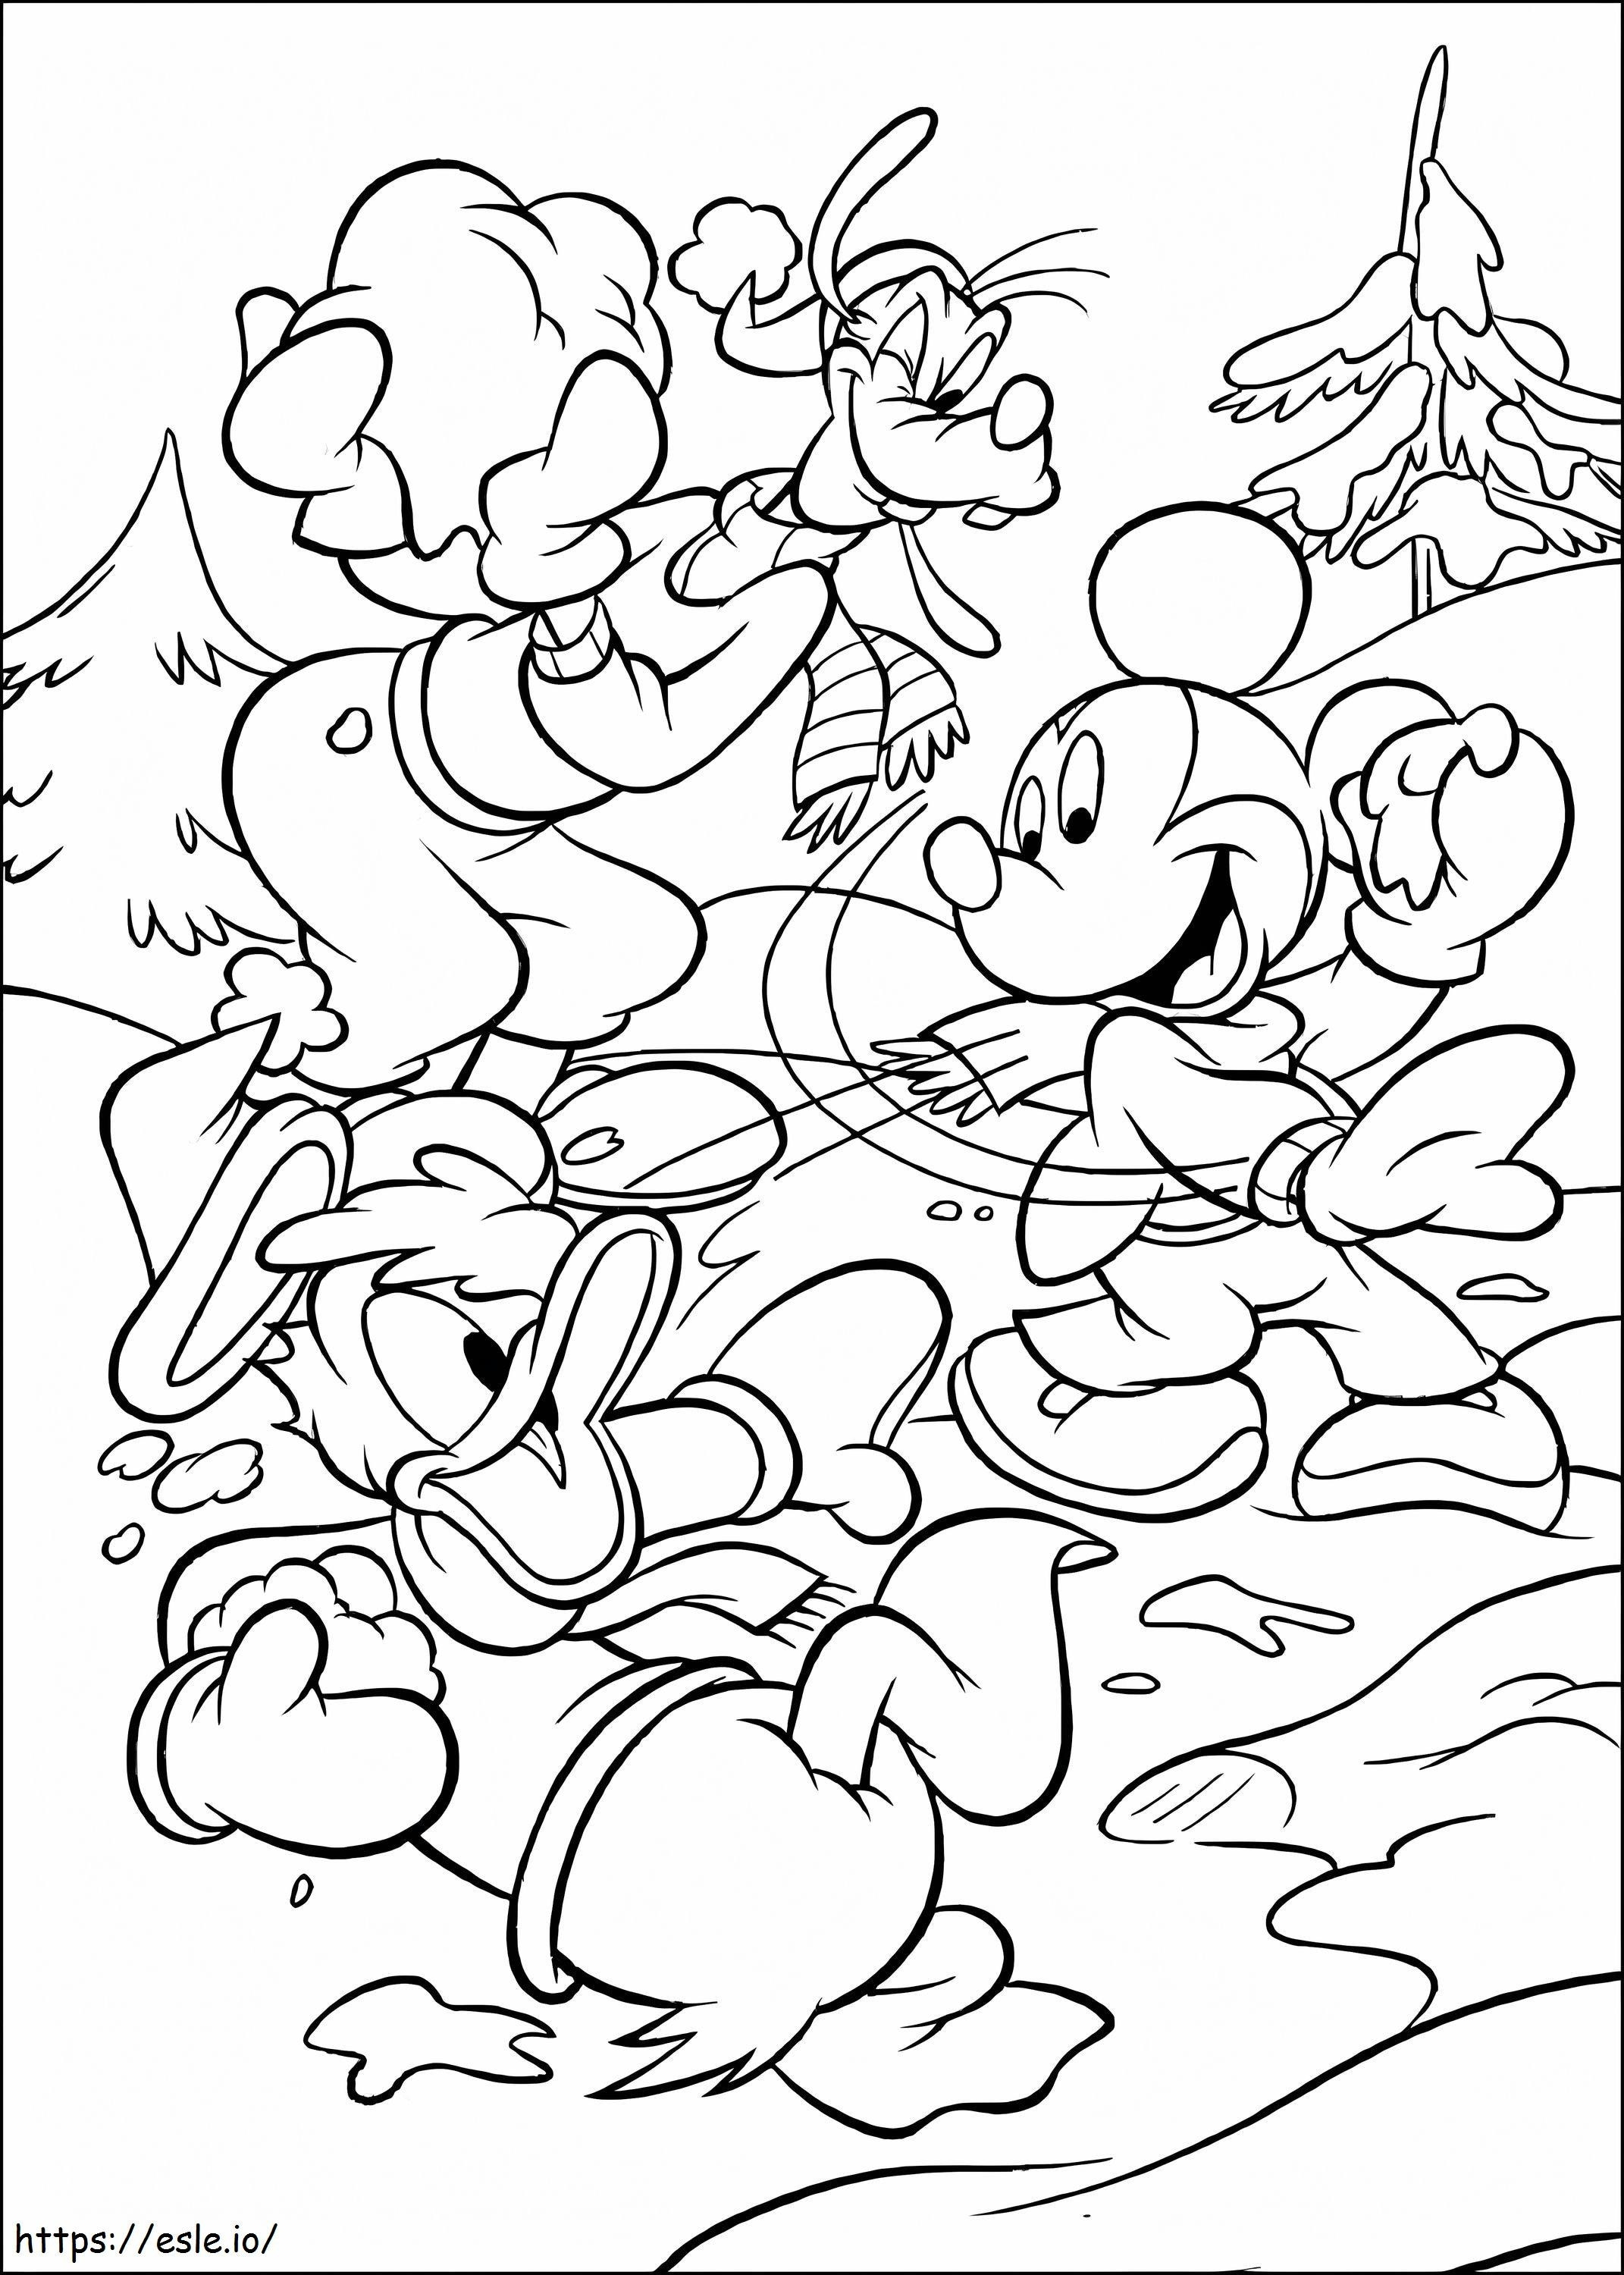 Myszka Miki i jego przyjaciele grają w śnieżki kolorowanka